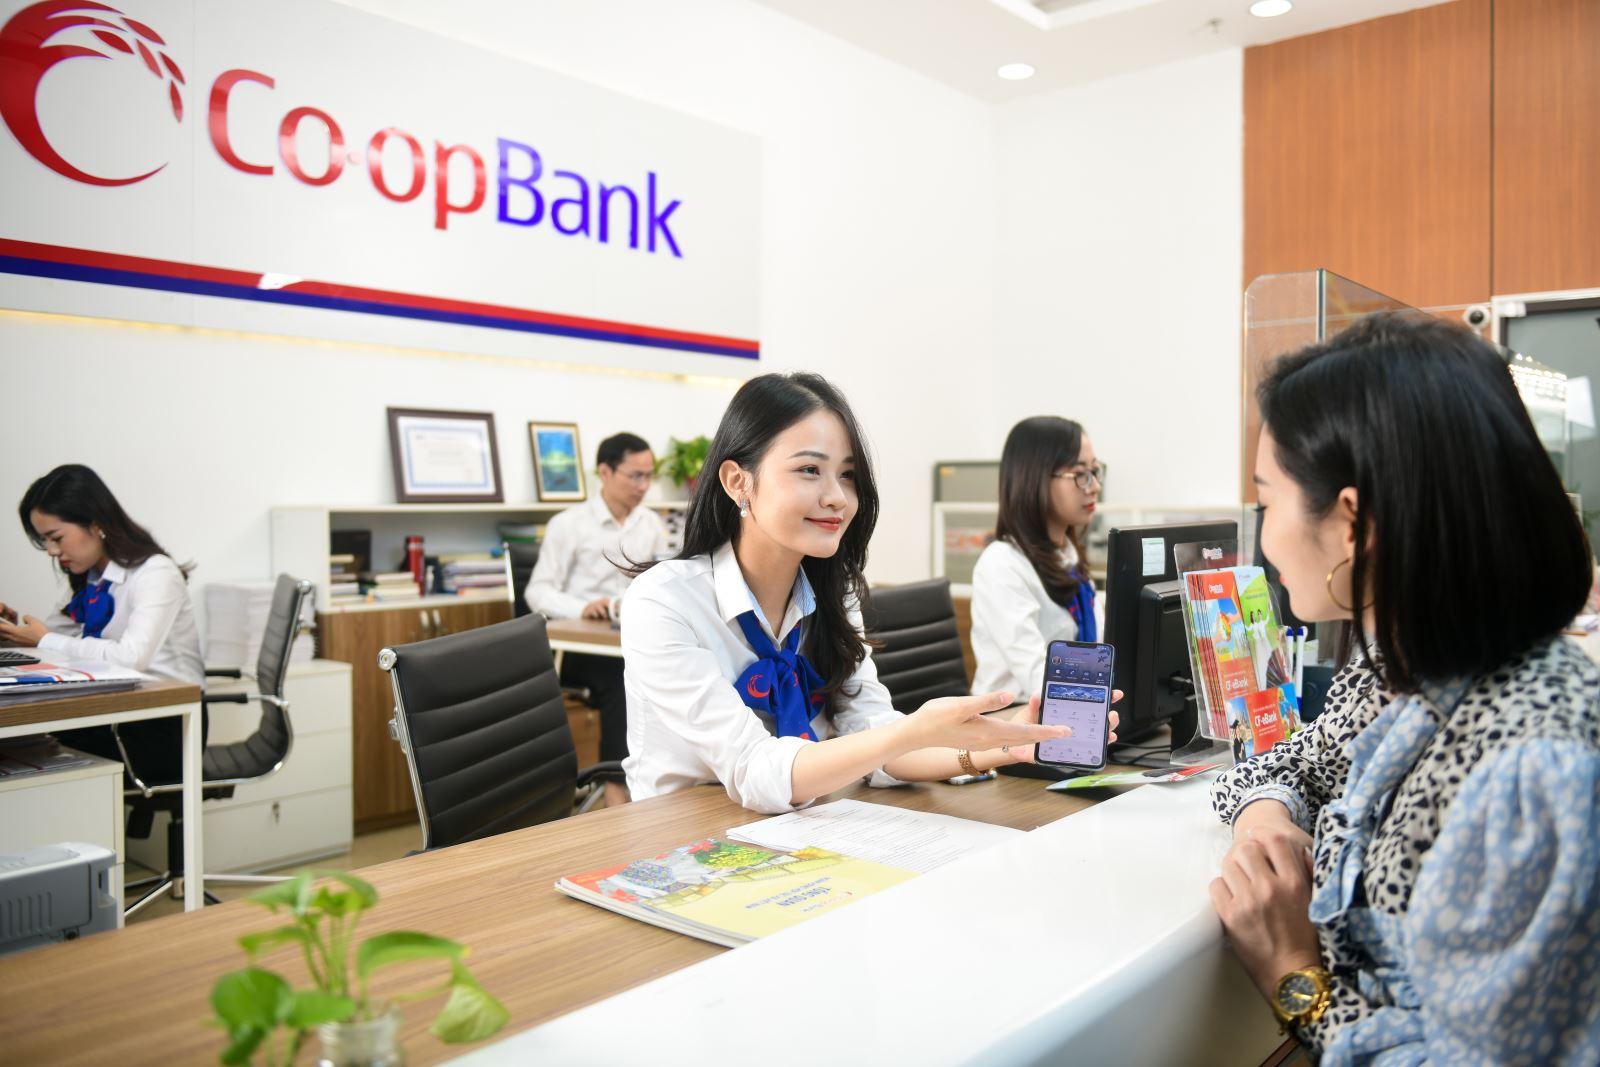 Tìm hiểu về ngân hàng Co-opBank - ảnh 1